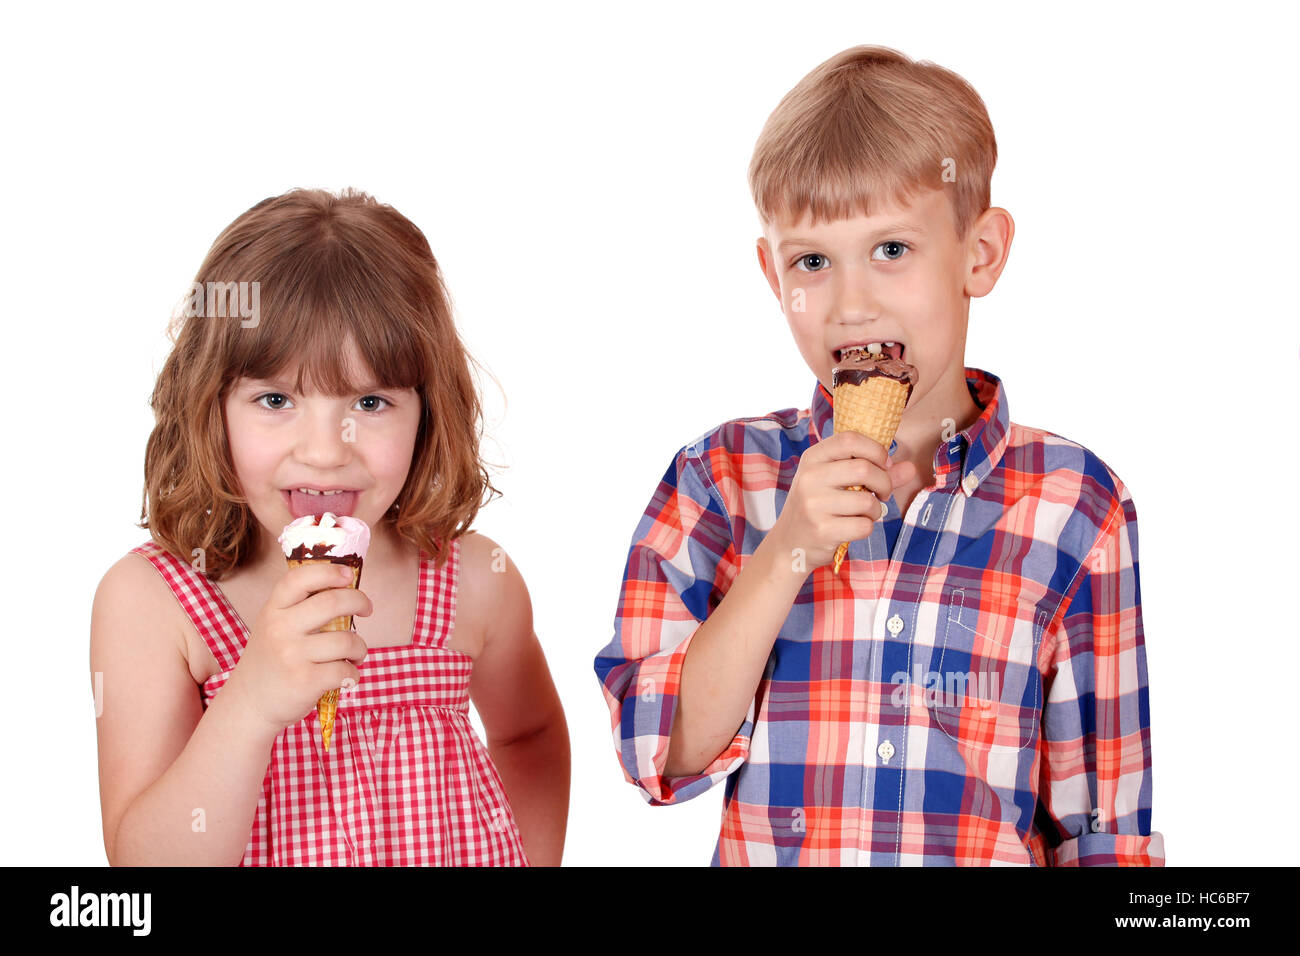 Petite fille et garçon de manger de la crème glacée Banque D'Images